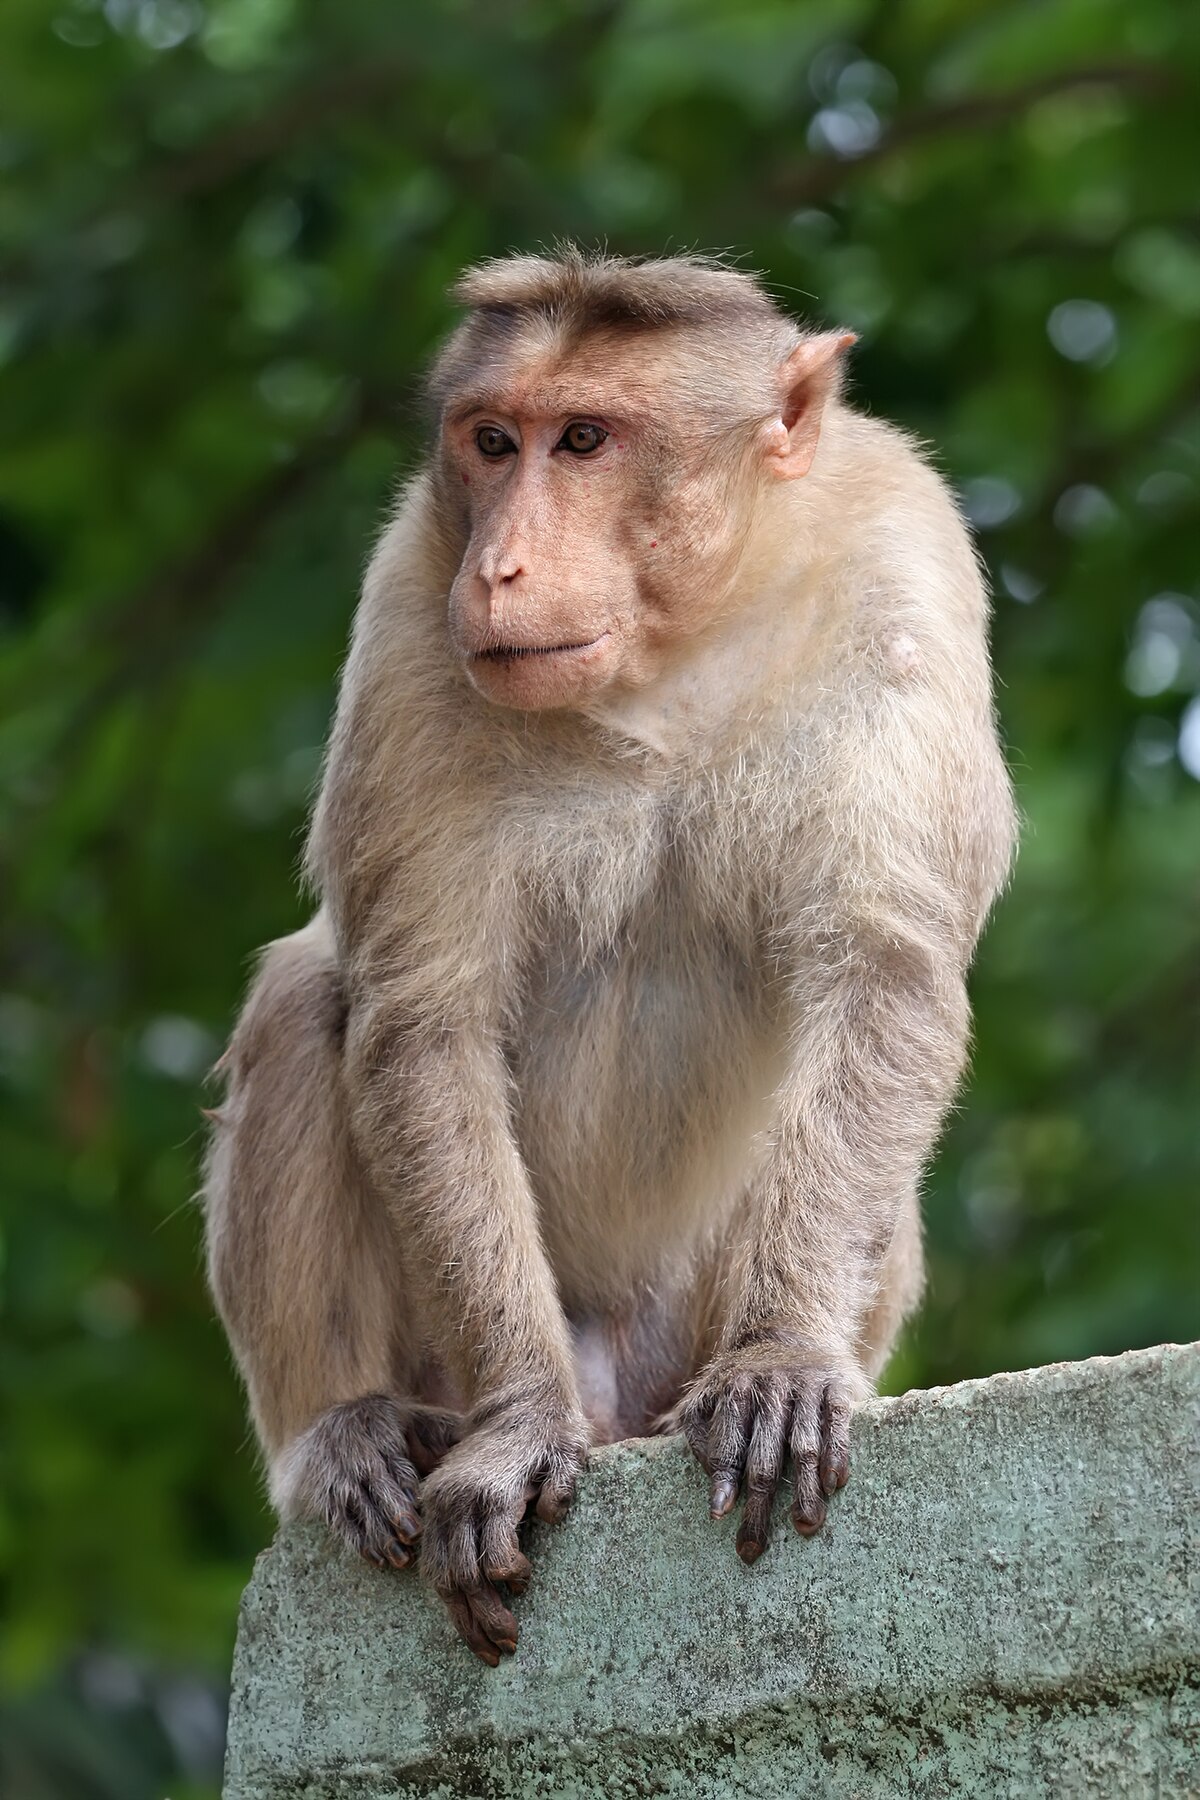 Con Khỉ là một hình tượng động vật nổi tiếng đã gắn liền với văn hoá và truyền thống của nhiều nước trên thế giới. Nếu bạn yêu mến con khỉ, thì chắc chắn sẽ thích xem những hình ảnh về chúng.